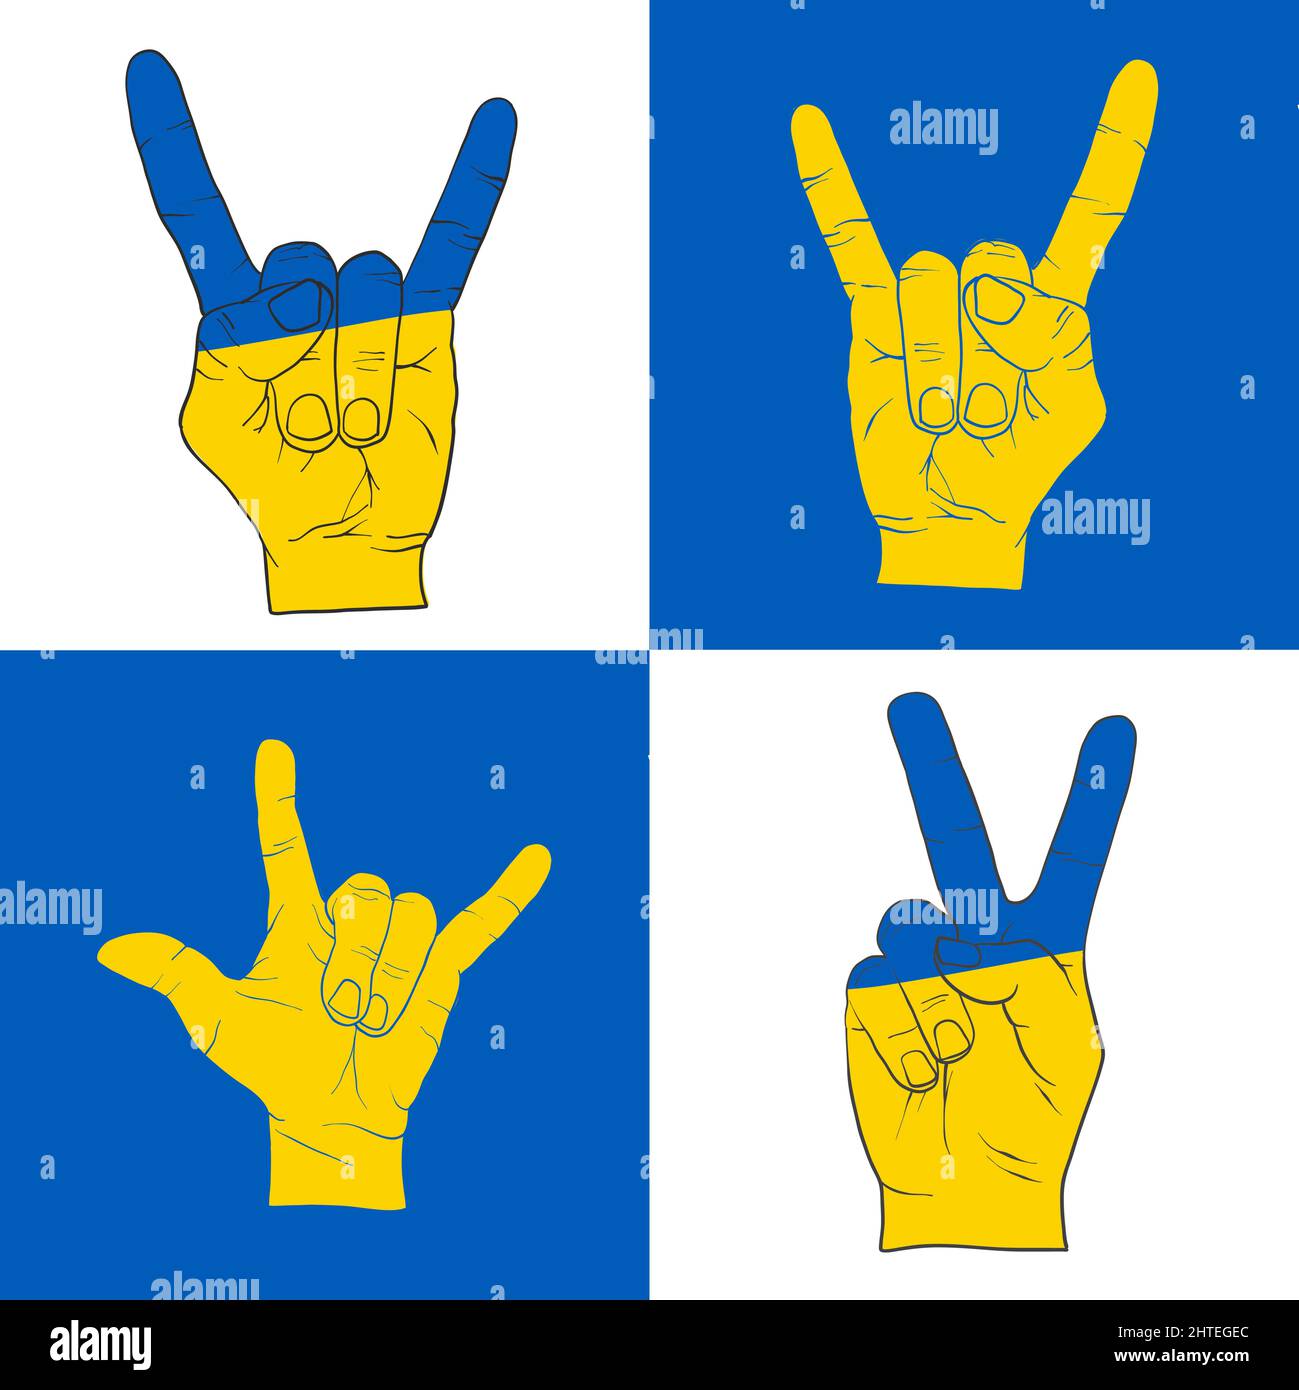 Verschiedene friedliche Handzeichen. Symbol für die Unterstützung der Menschen in Kiew und der Ukraine. Gemeinsam stark bleiben. Patriotisches Symbol, Icon.-SupplementalCategories+=Bilder Stock Vektor